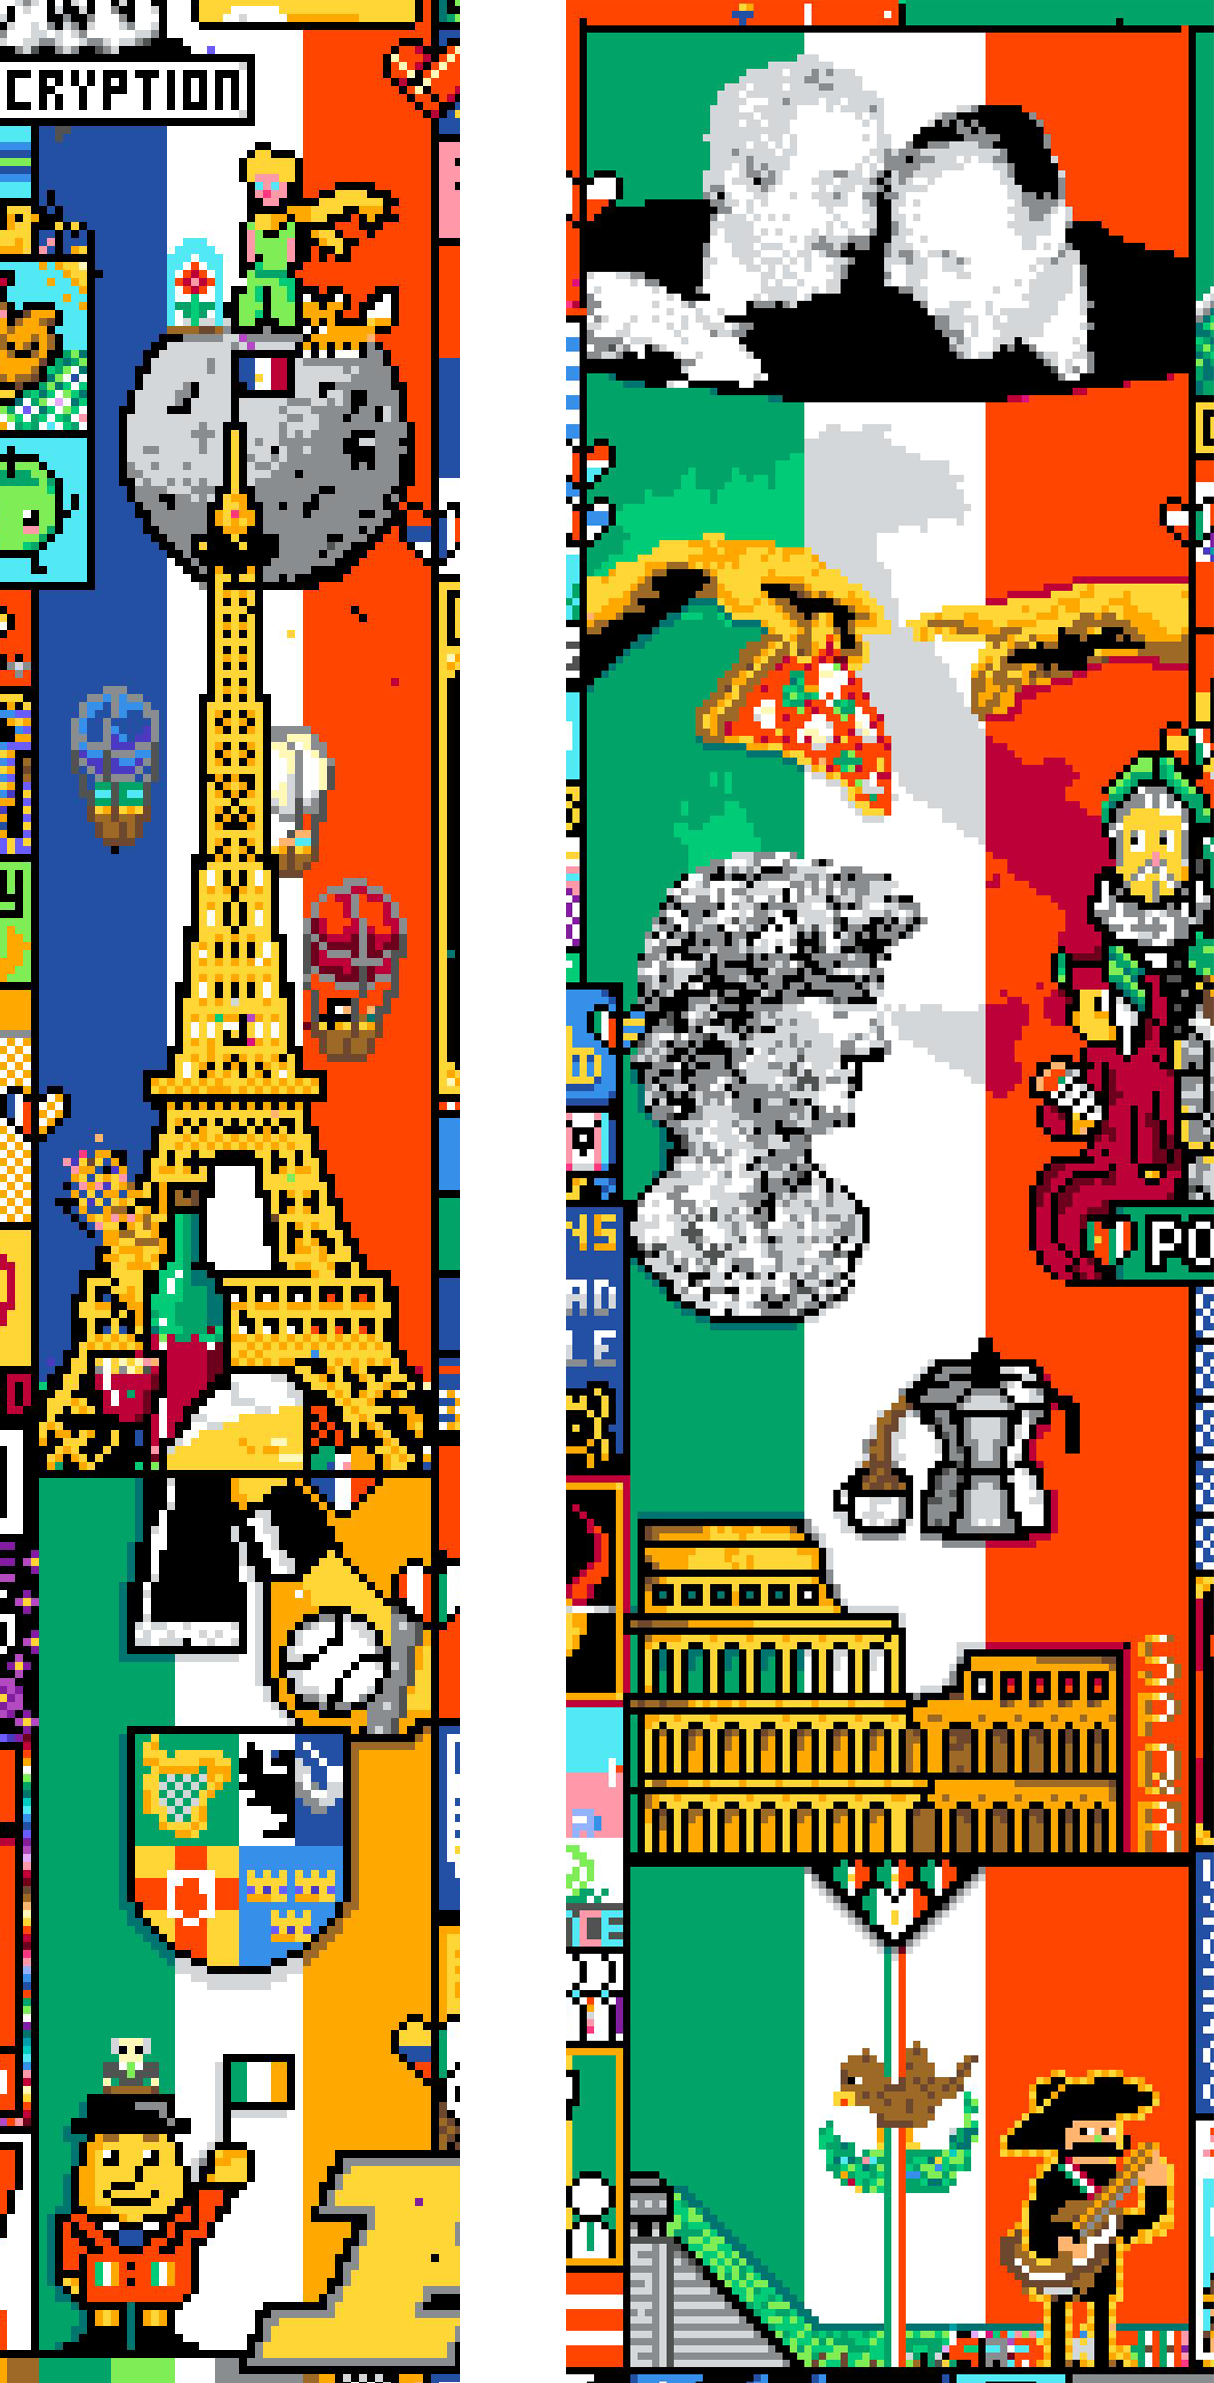 colaborações entre bandeiras similares foram um sucesso (França+Irlanda à esquerda, Itália+México à direita)